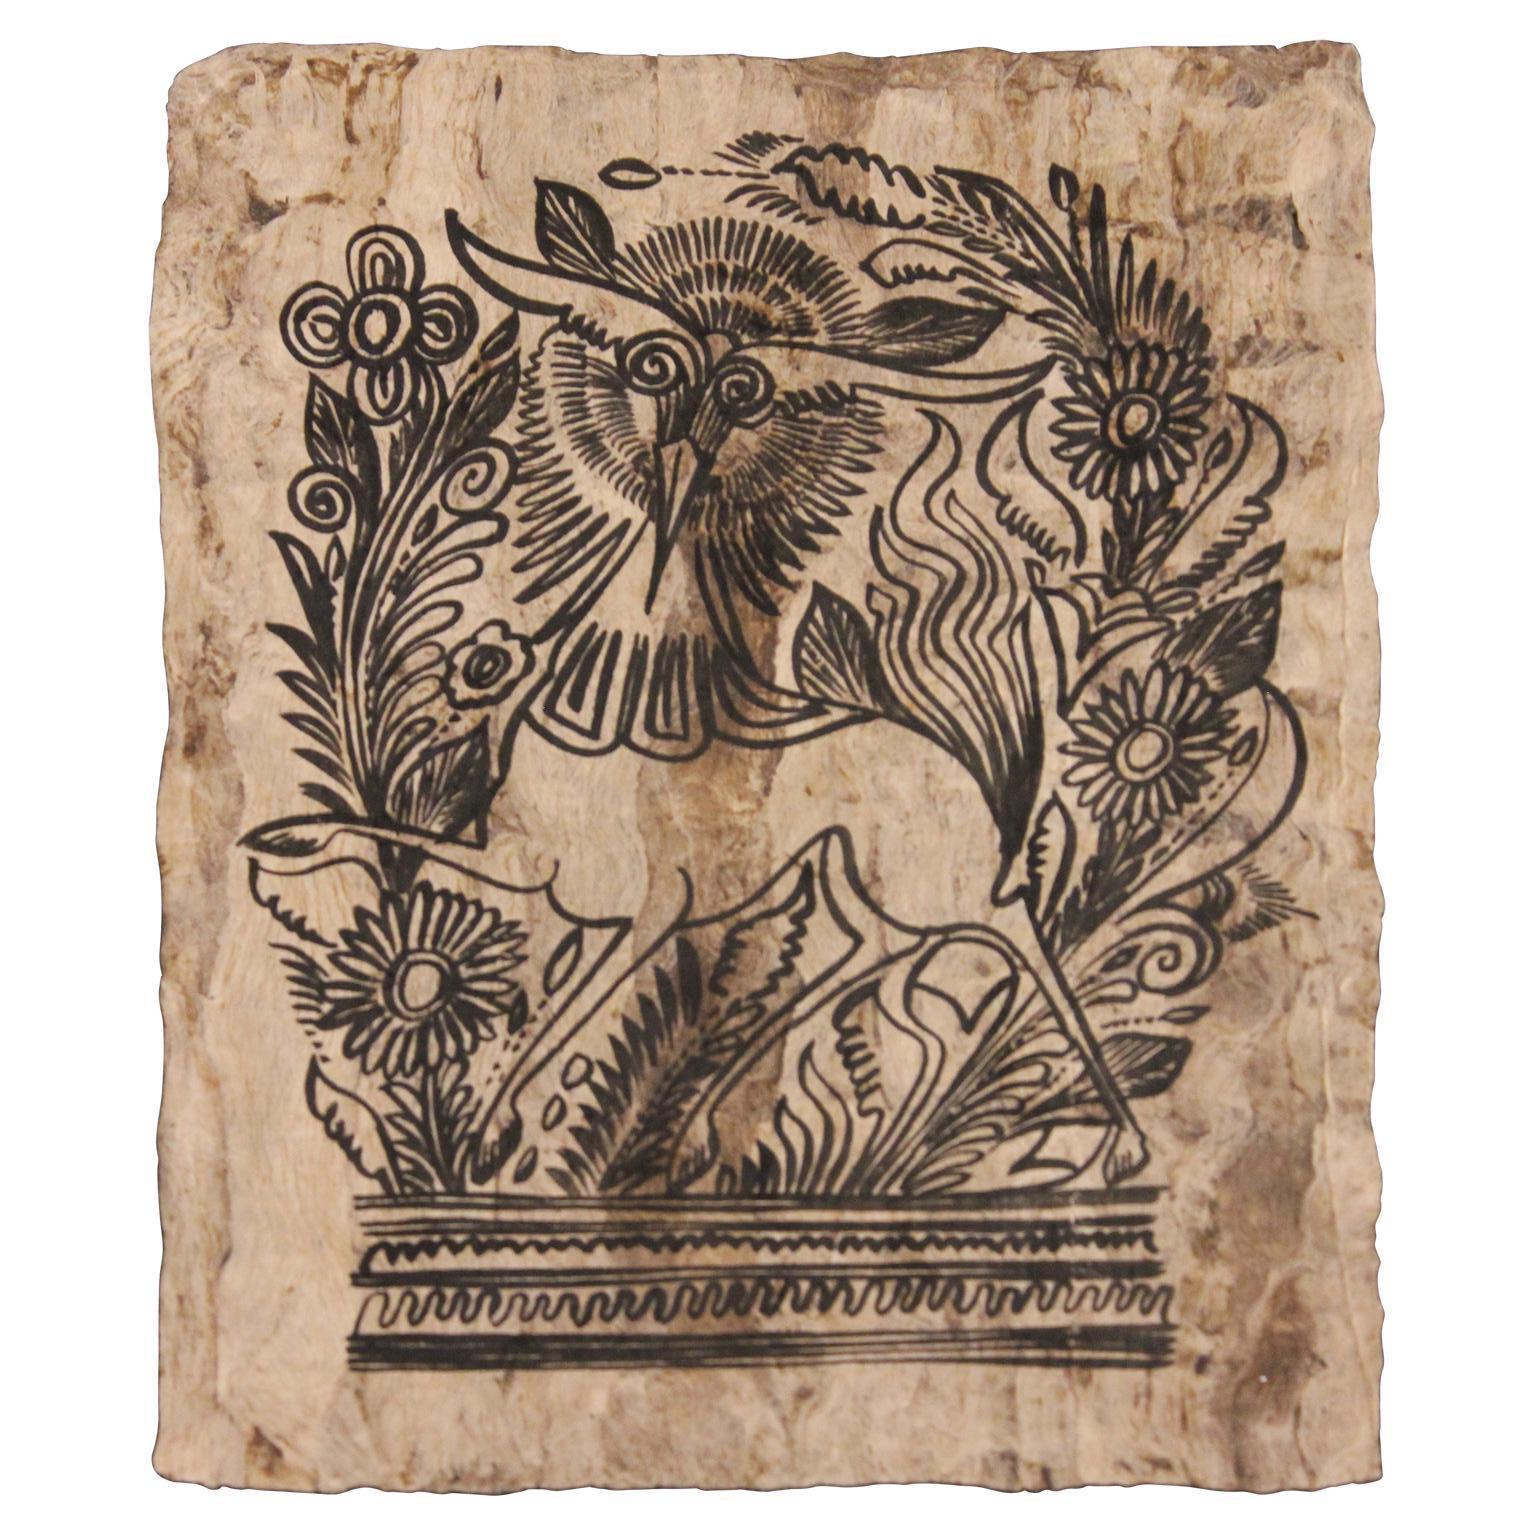 Création mythique avec feuillage peinte sur papier fait à la main